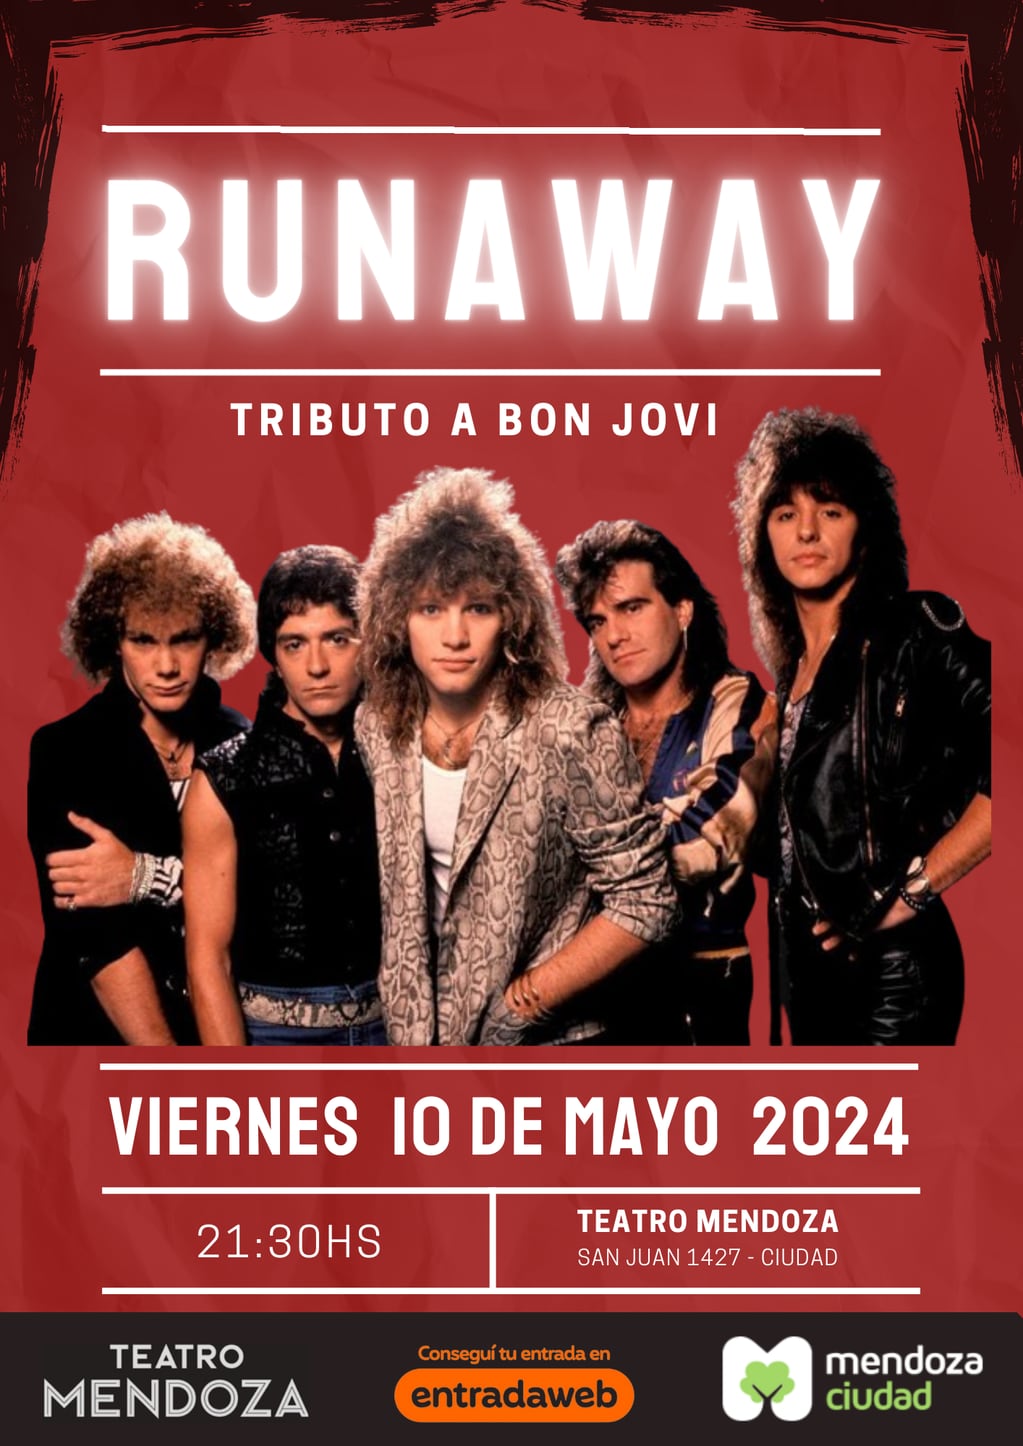 La banda Runaway presenta un show especial en el teatro Mendoza.